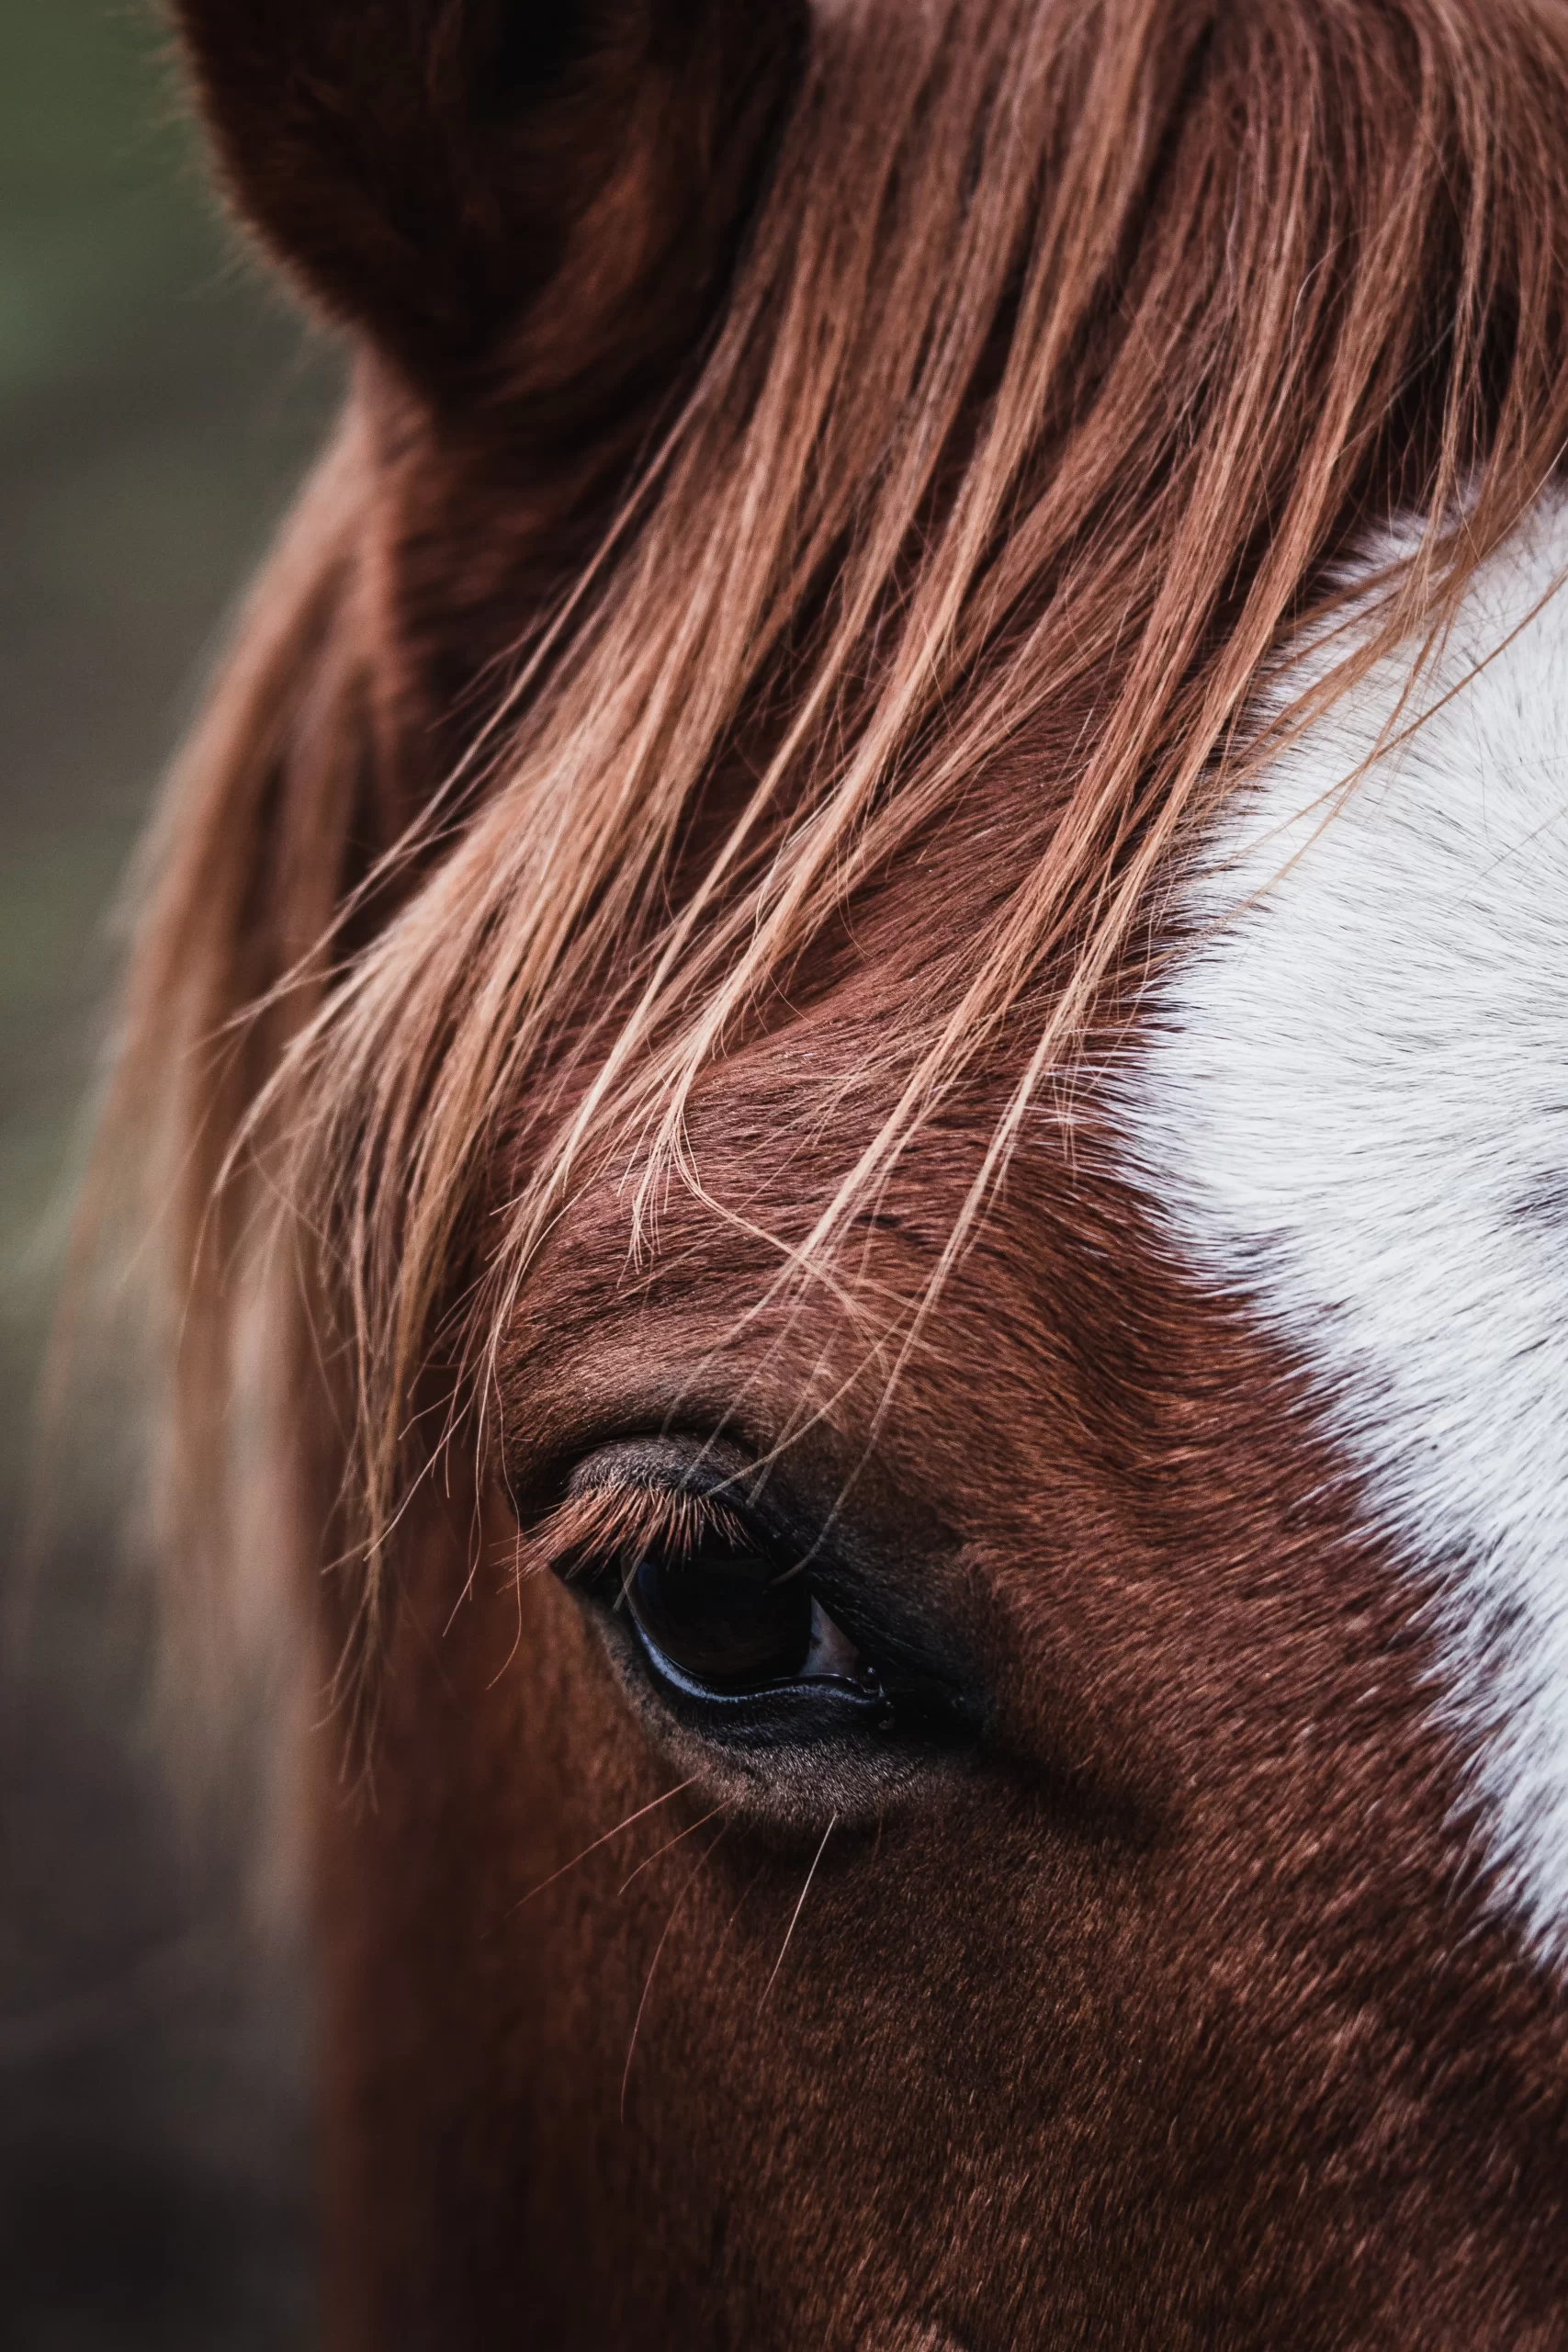 aurelien-faux-Horse showing left eye only-unsplash